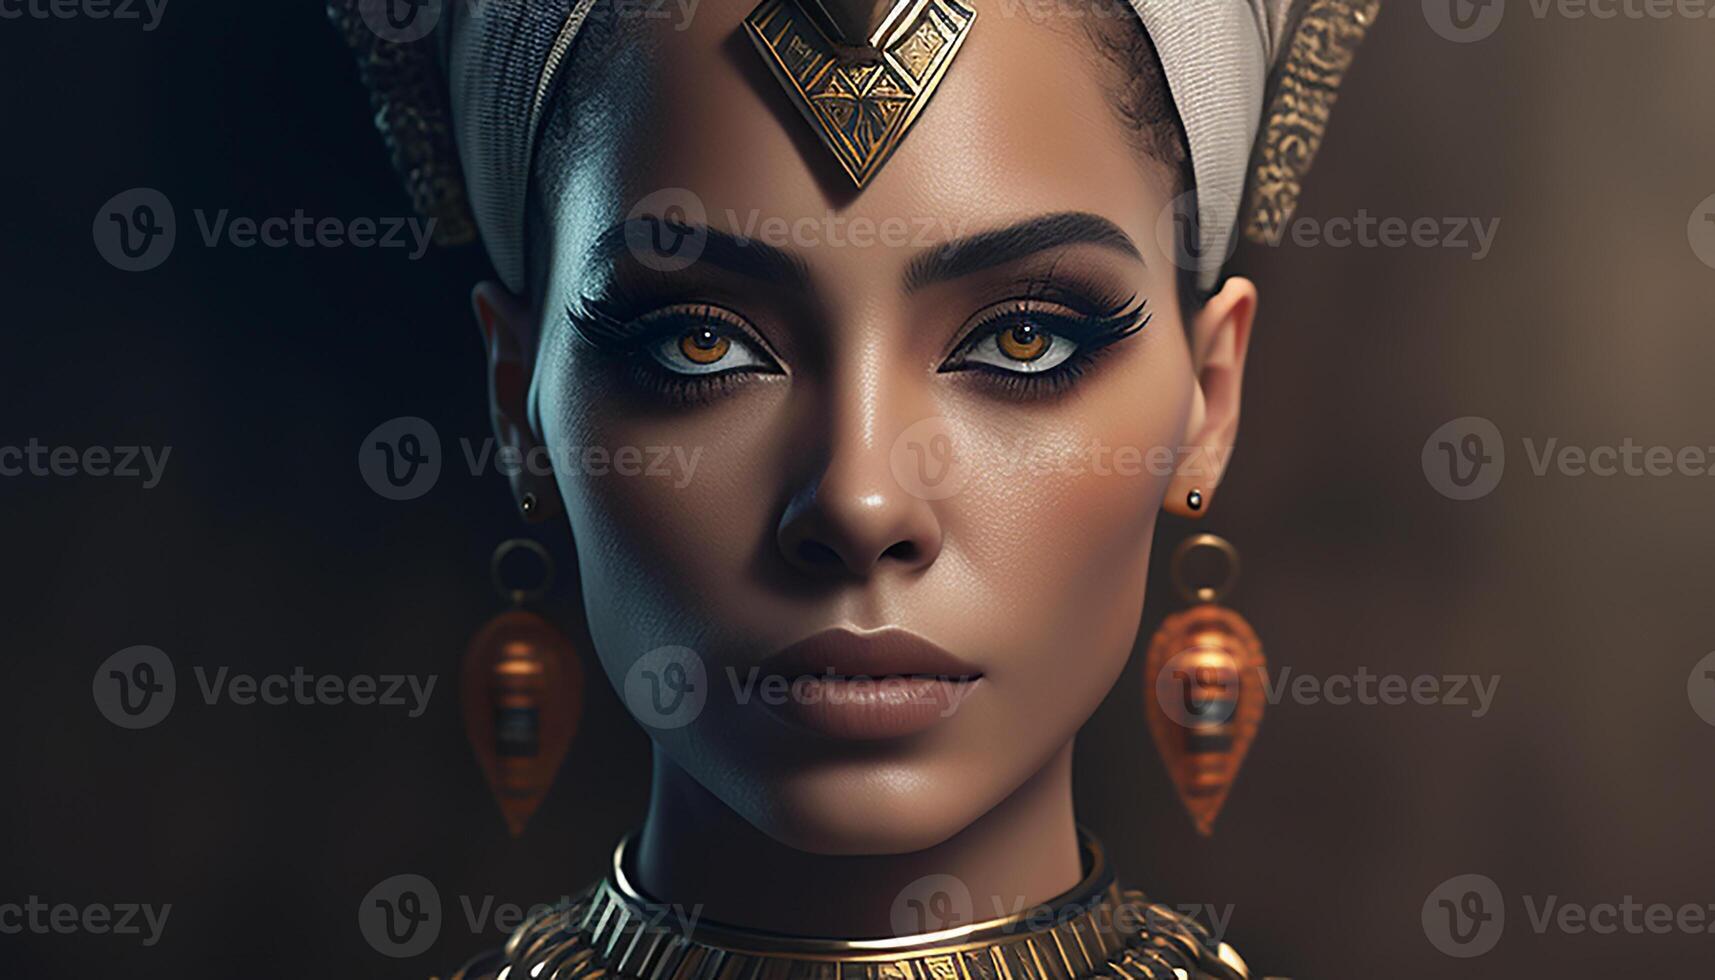 Sekhmet, portrait of a woman queen of ancient Egypt. photo